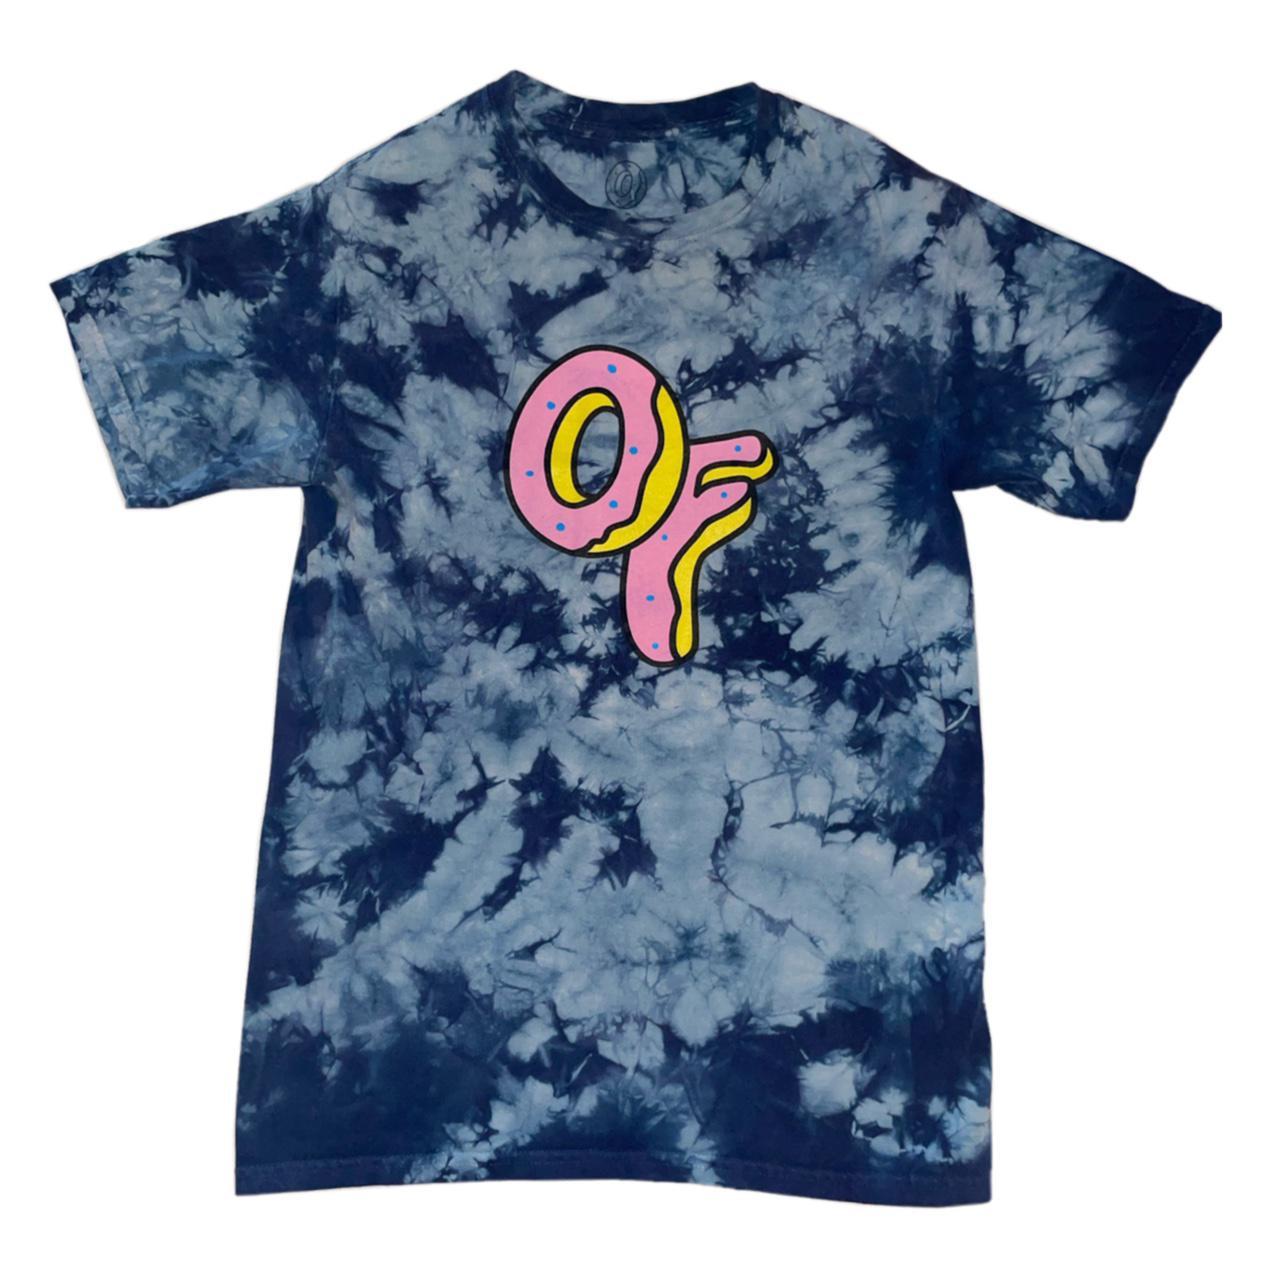 Odd Future Women's Blue and Pink T-shirt | Depop